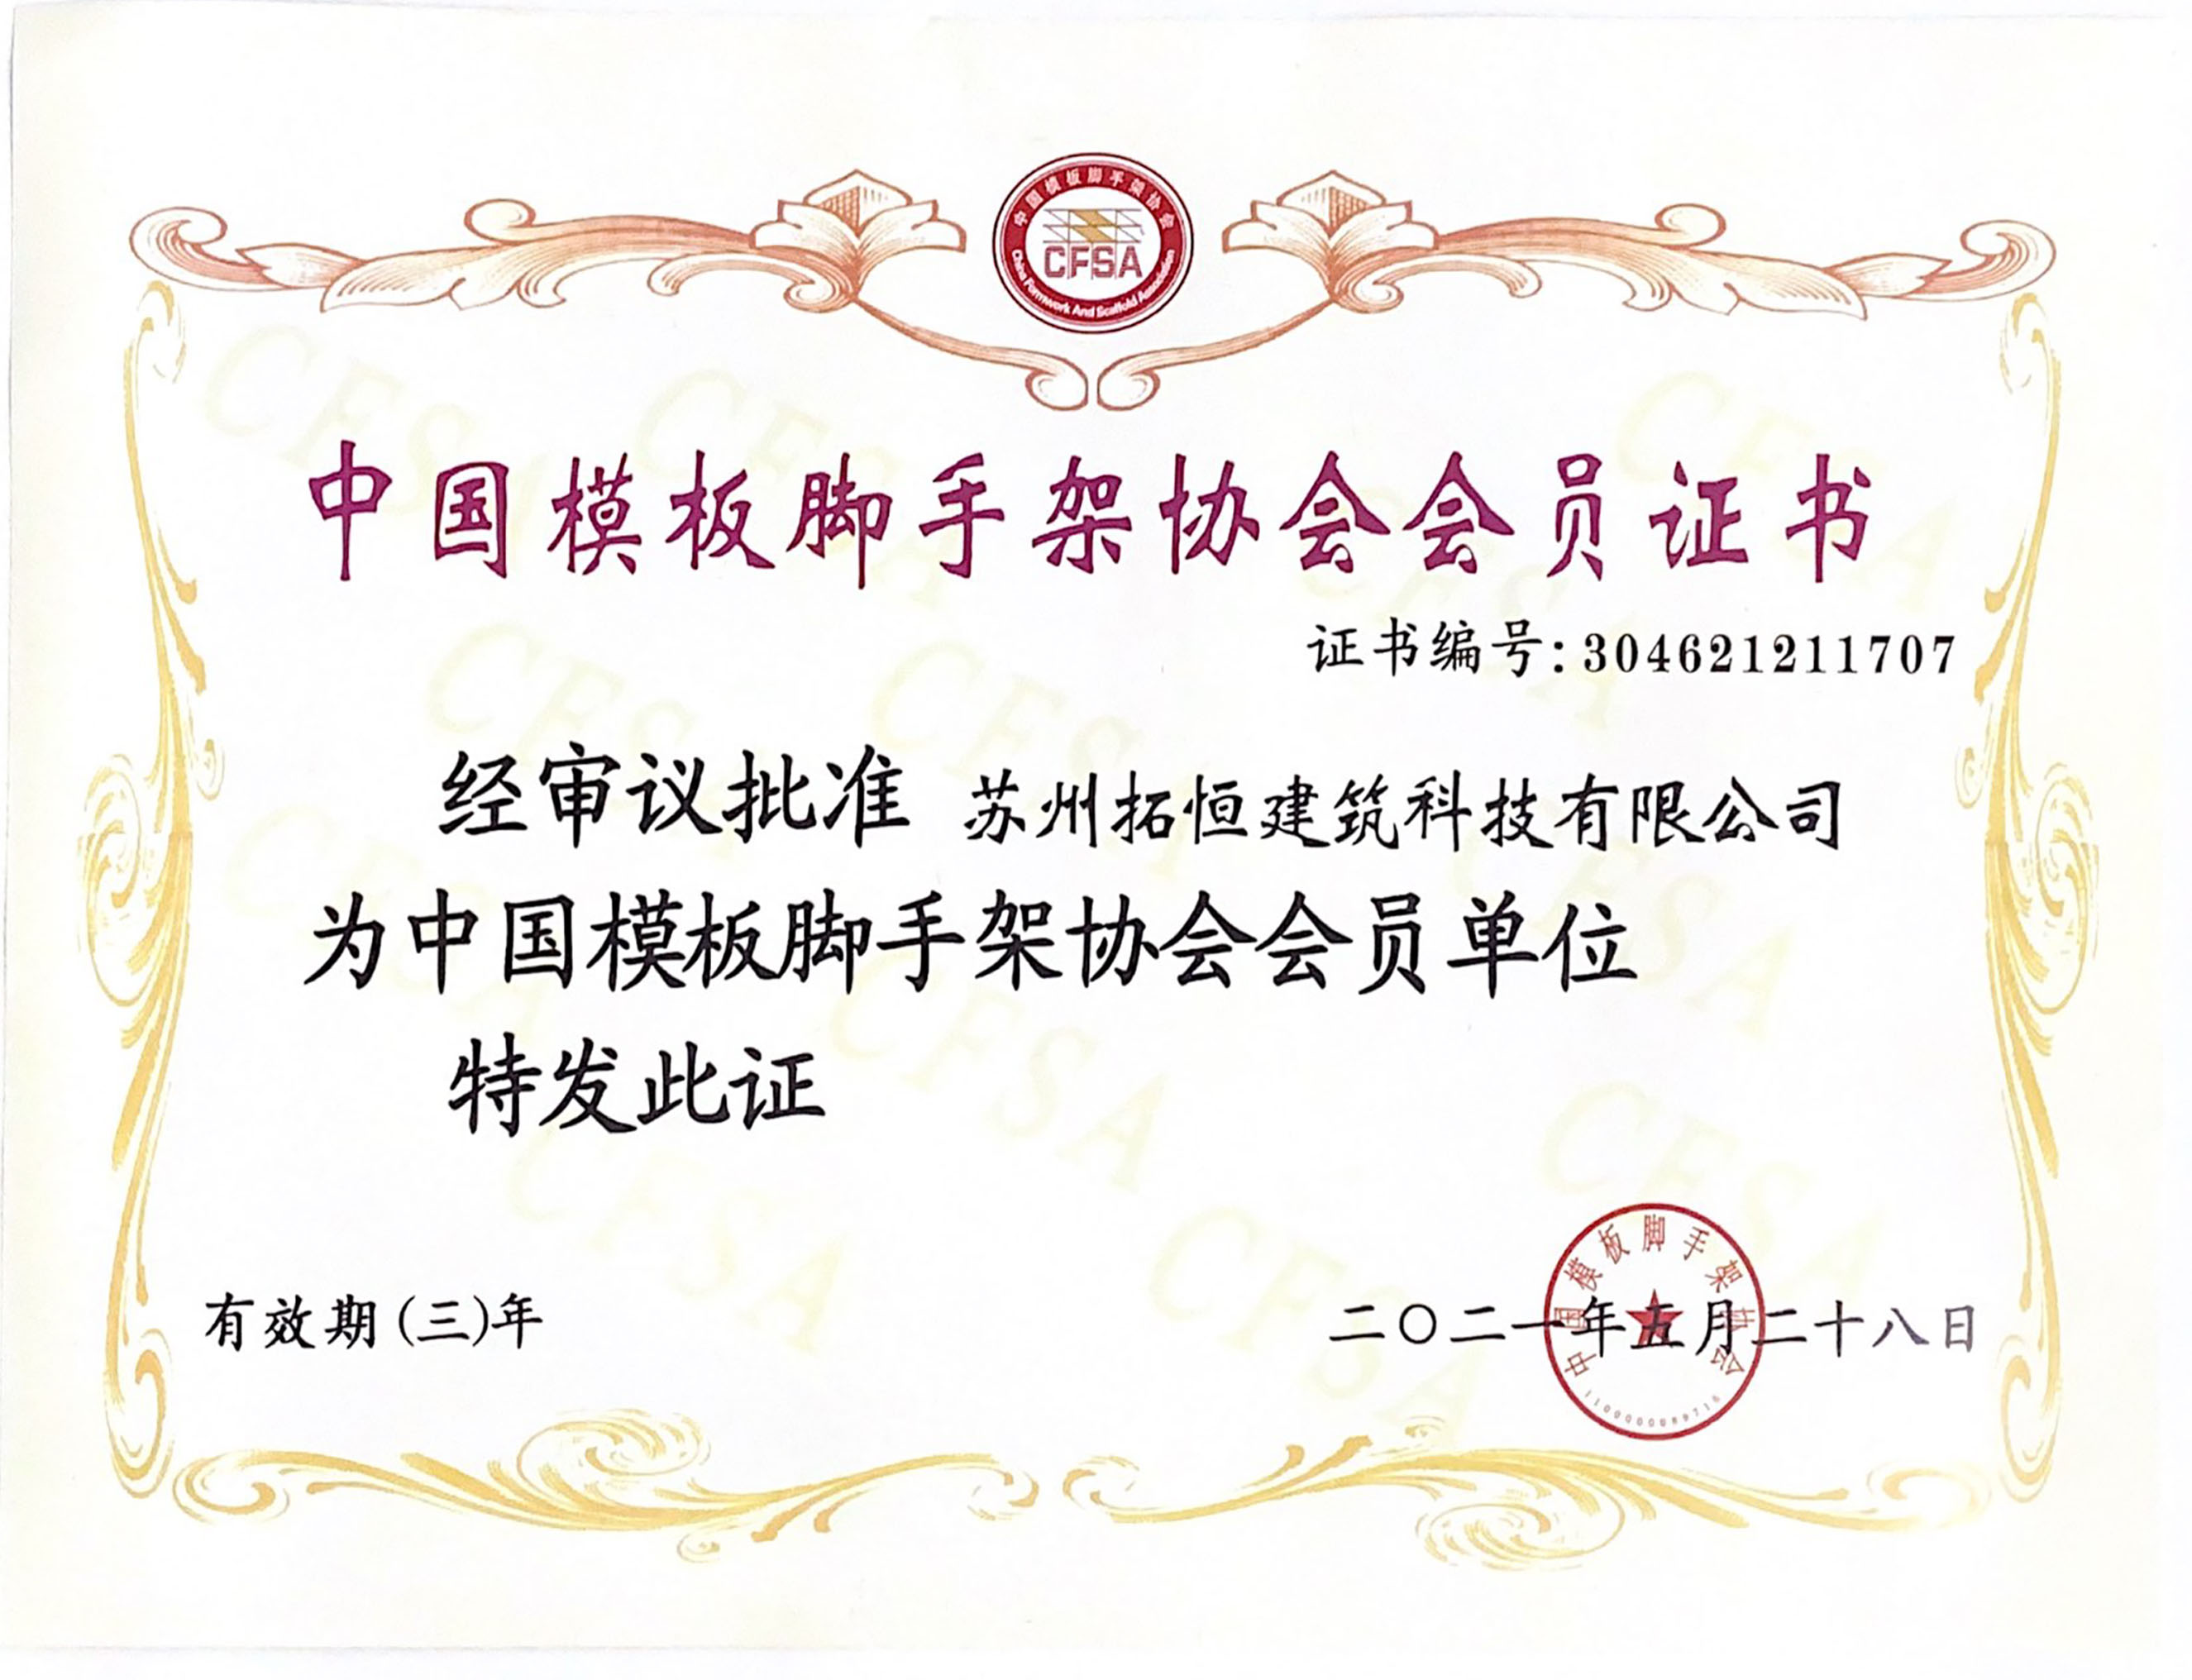 شهادة عضوية جمعية قوالب الخرسانة والسقالة الصينية